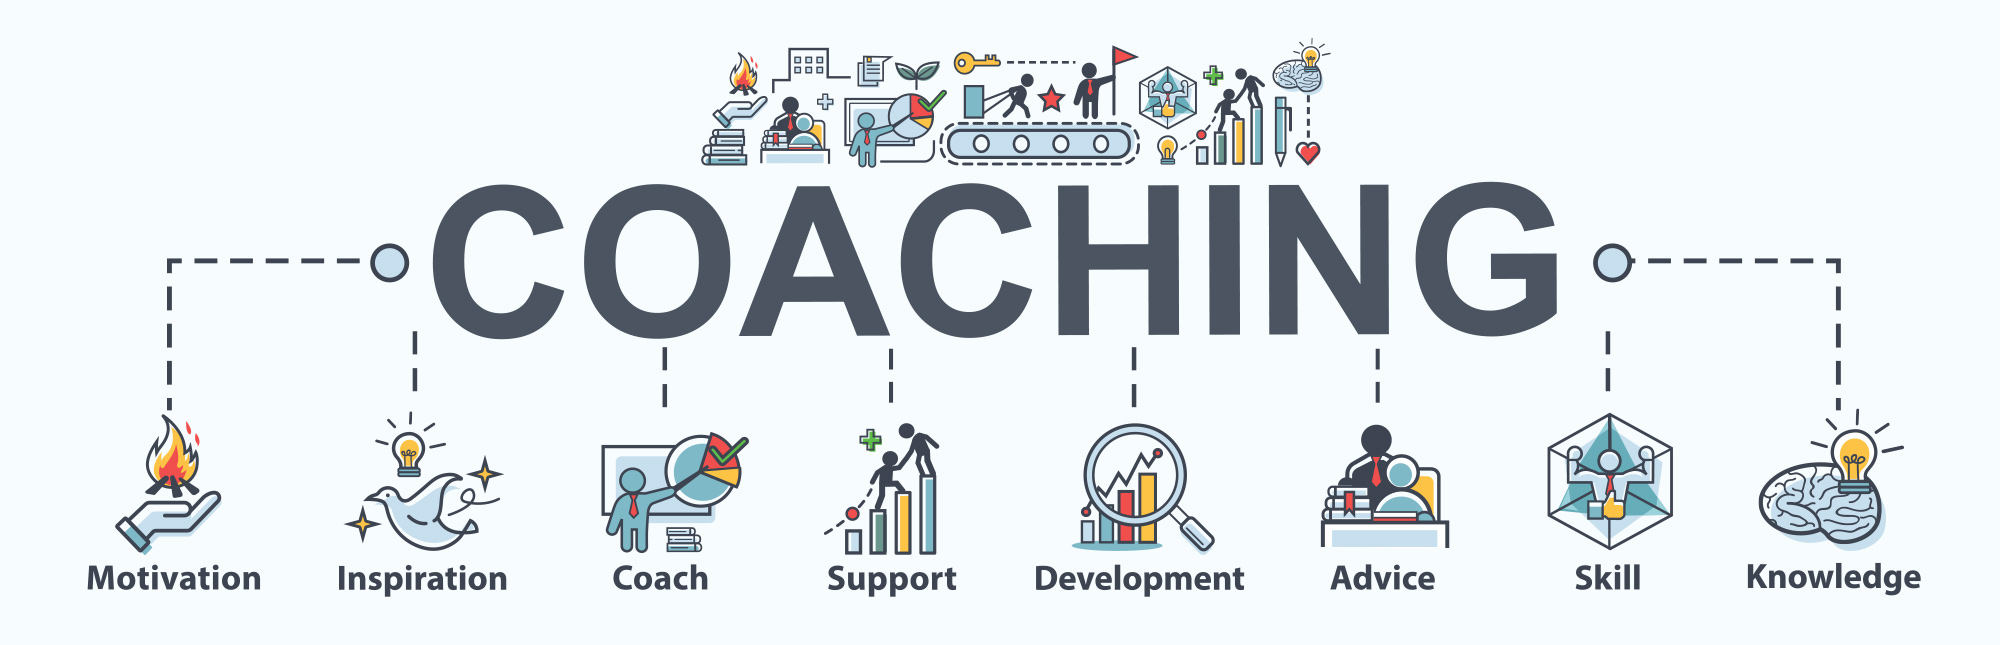 How to become an executive coach: coaching process